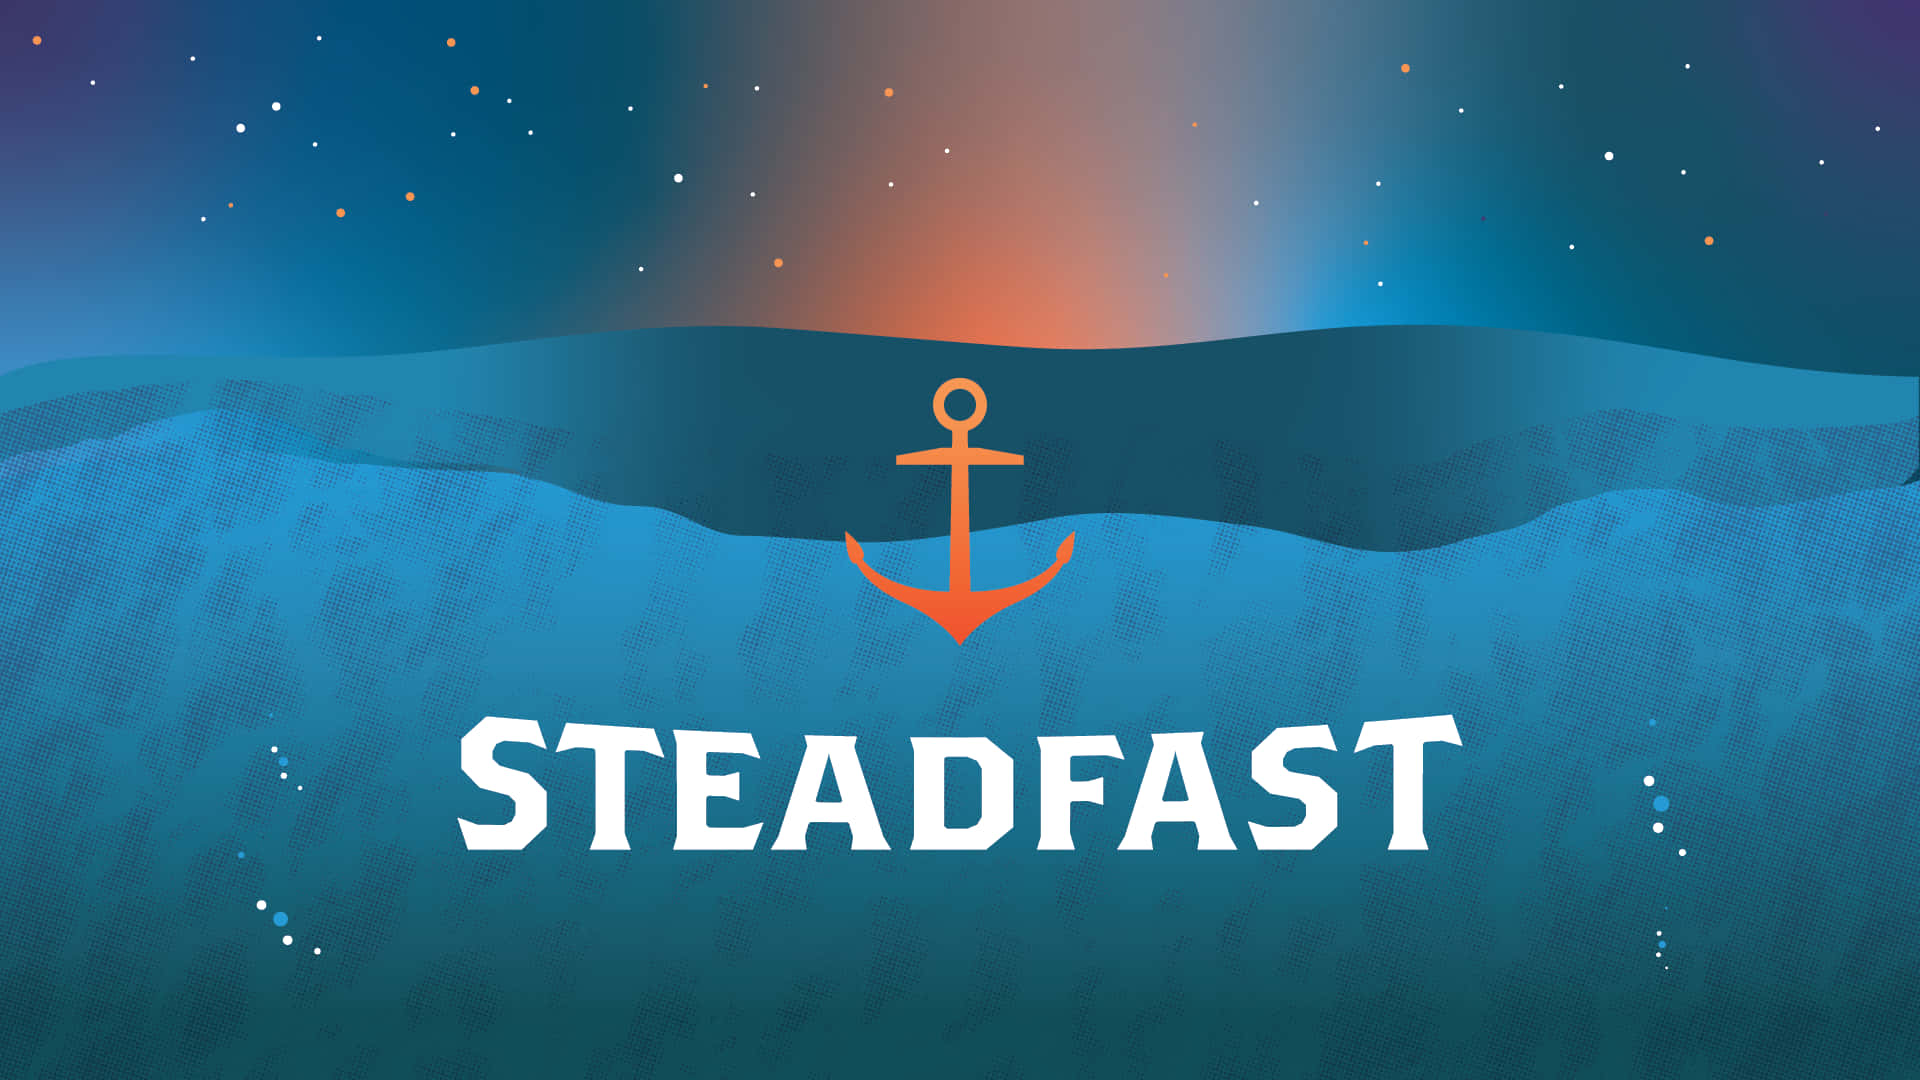 Steadfast Anchor Nautical Theme Wallpaper